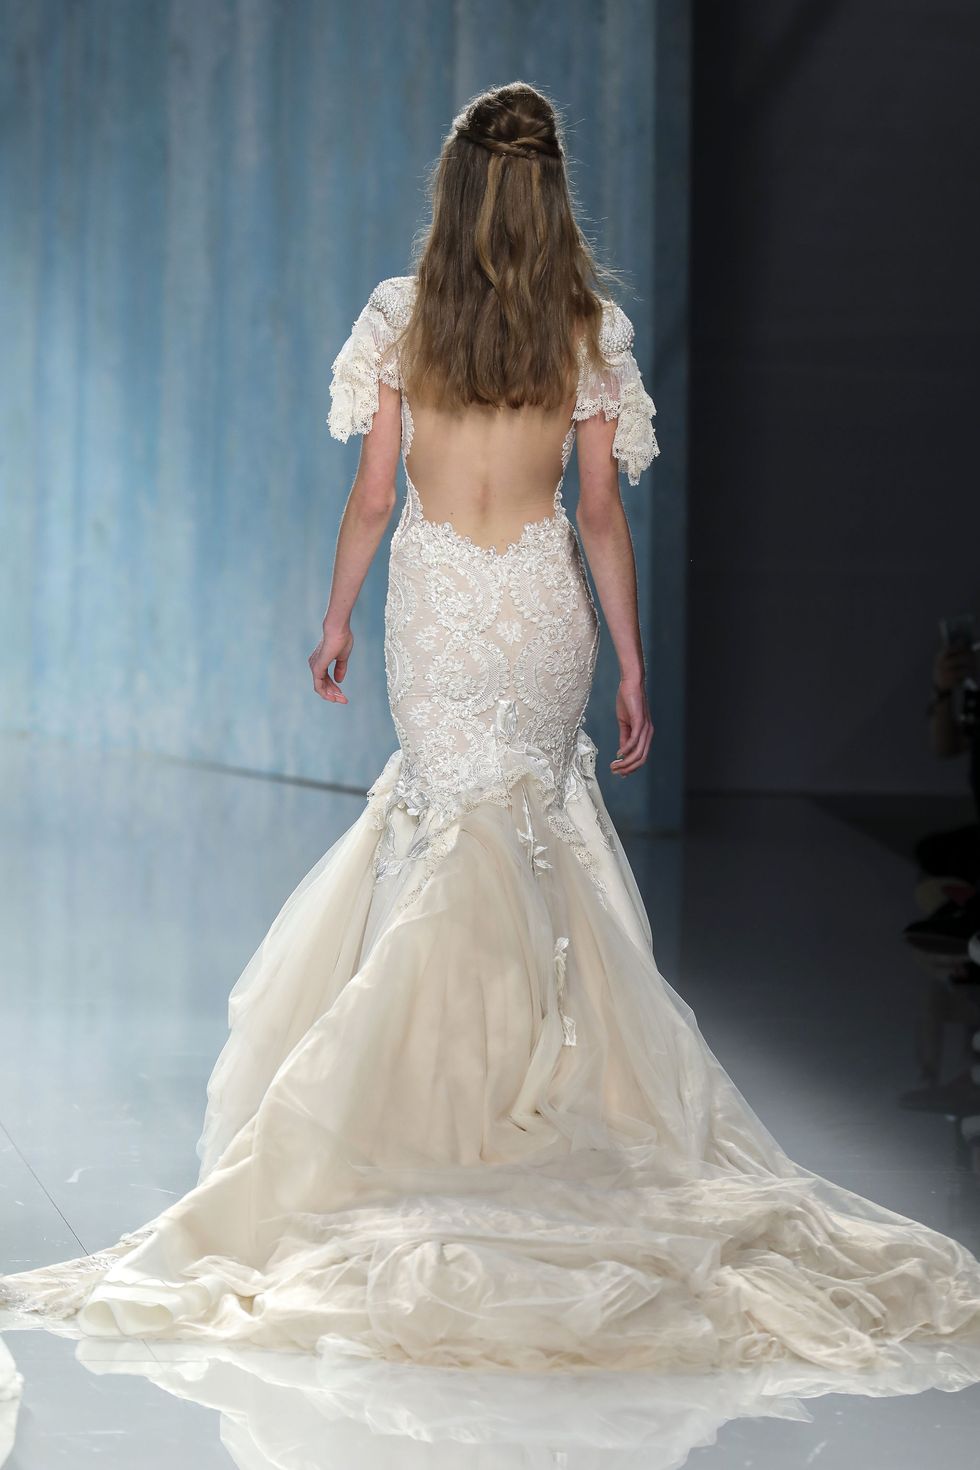 Gown, Wedding dress, Dress, Fashion model, Clothing, Bridal clothing, Bridal party dress, Shoulder, Bride, Fashion, 